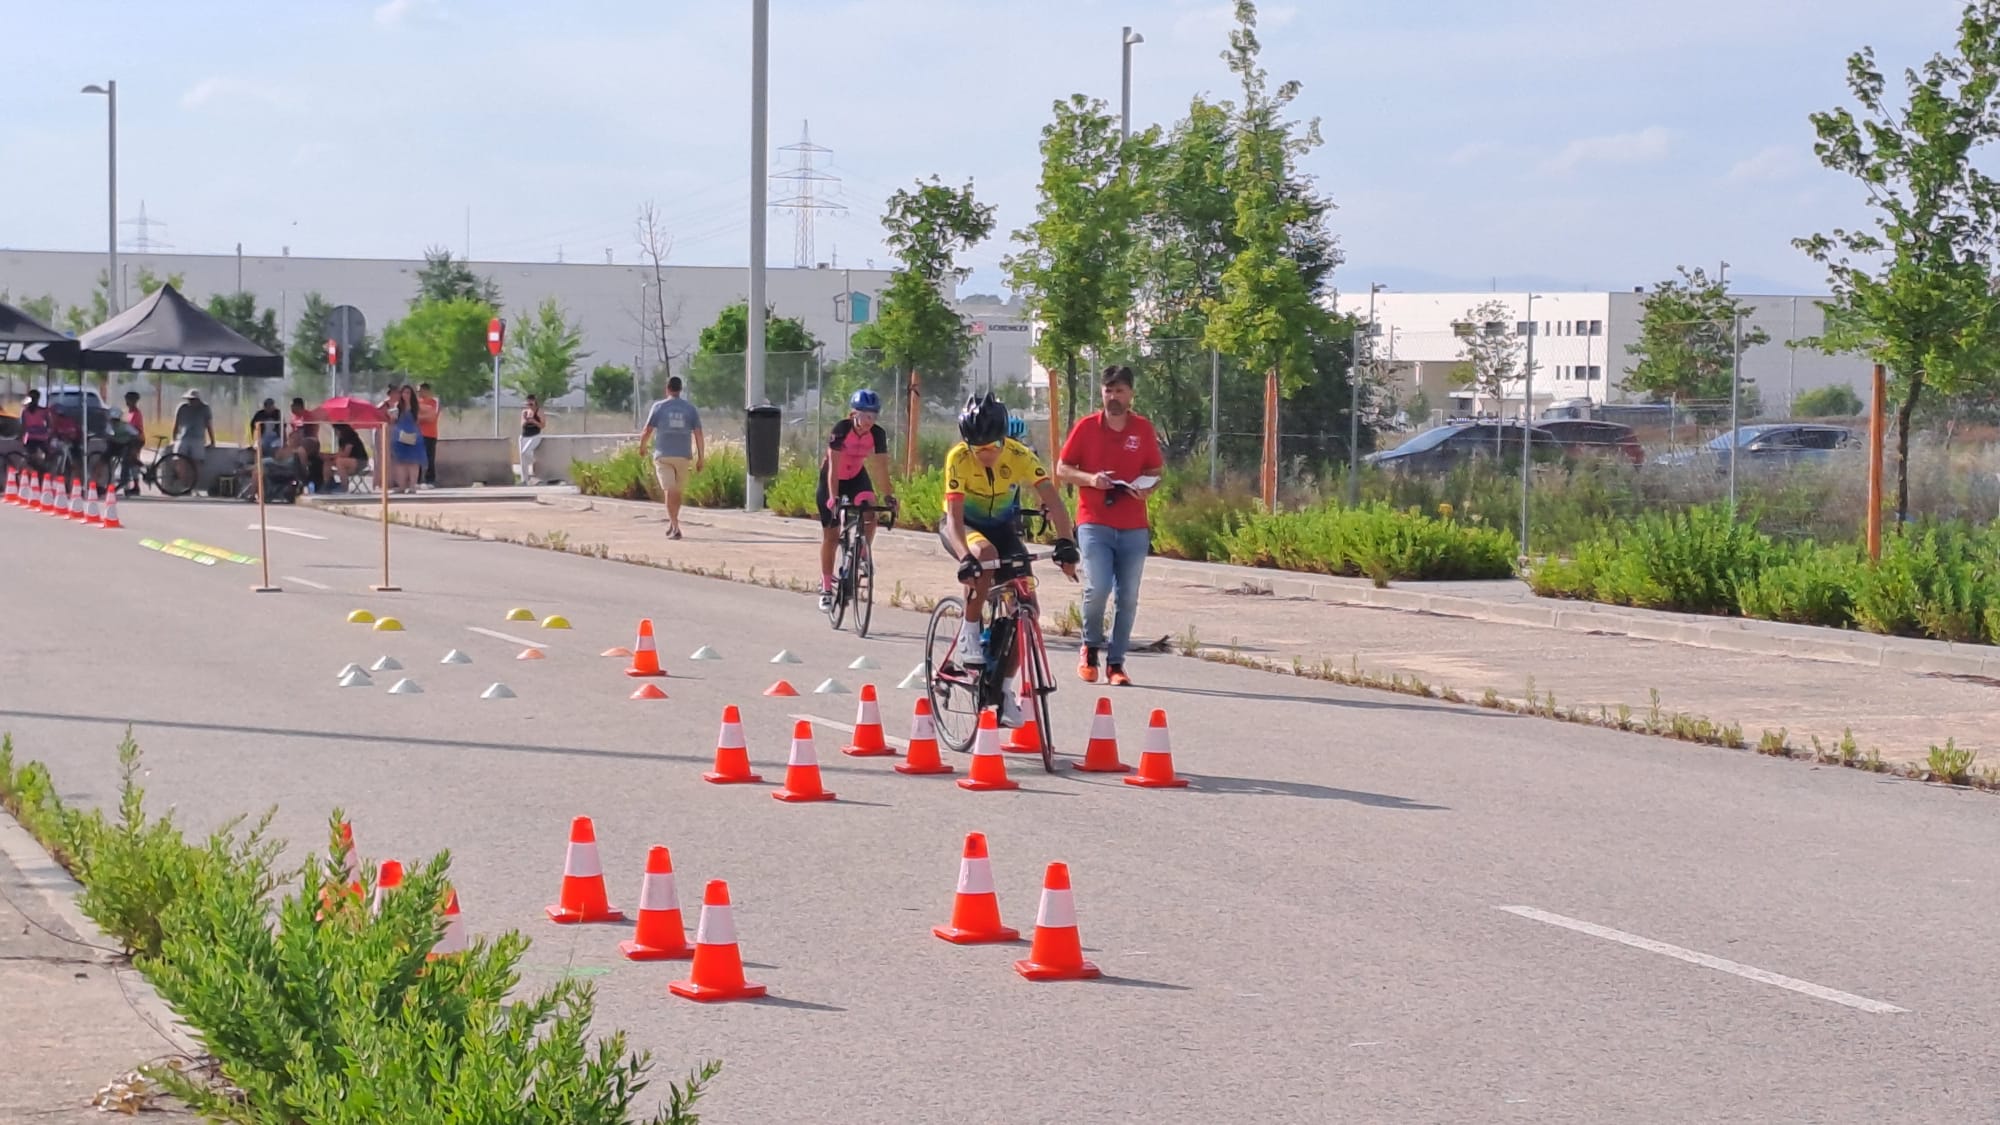 Intensos entrenamientos de la preselección madrileña escolar de carretera rumbo a los Campeonatos de España en Áviles